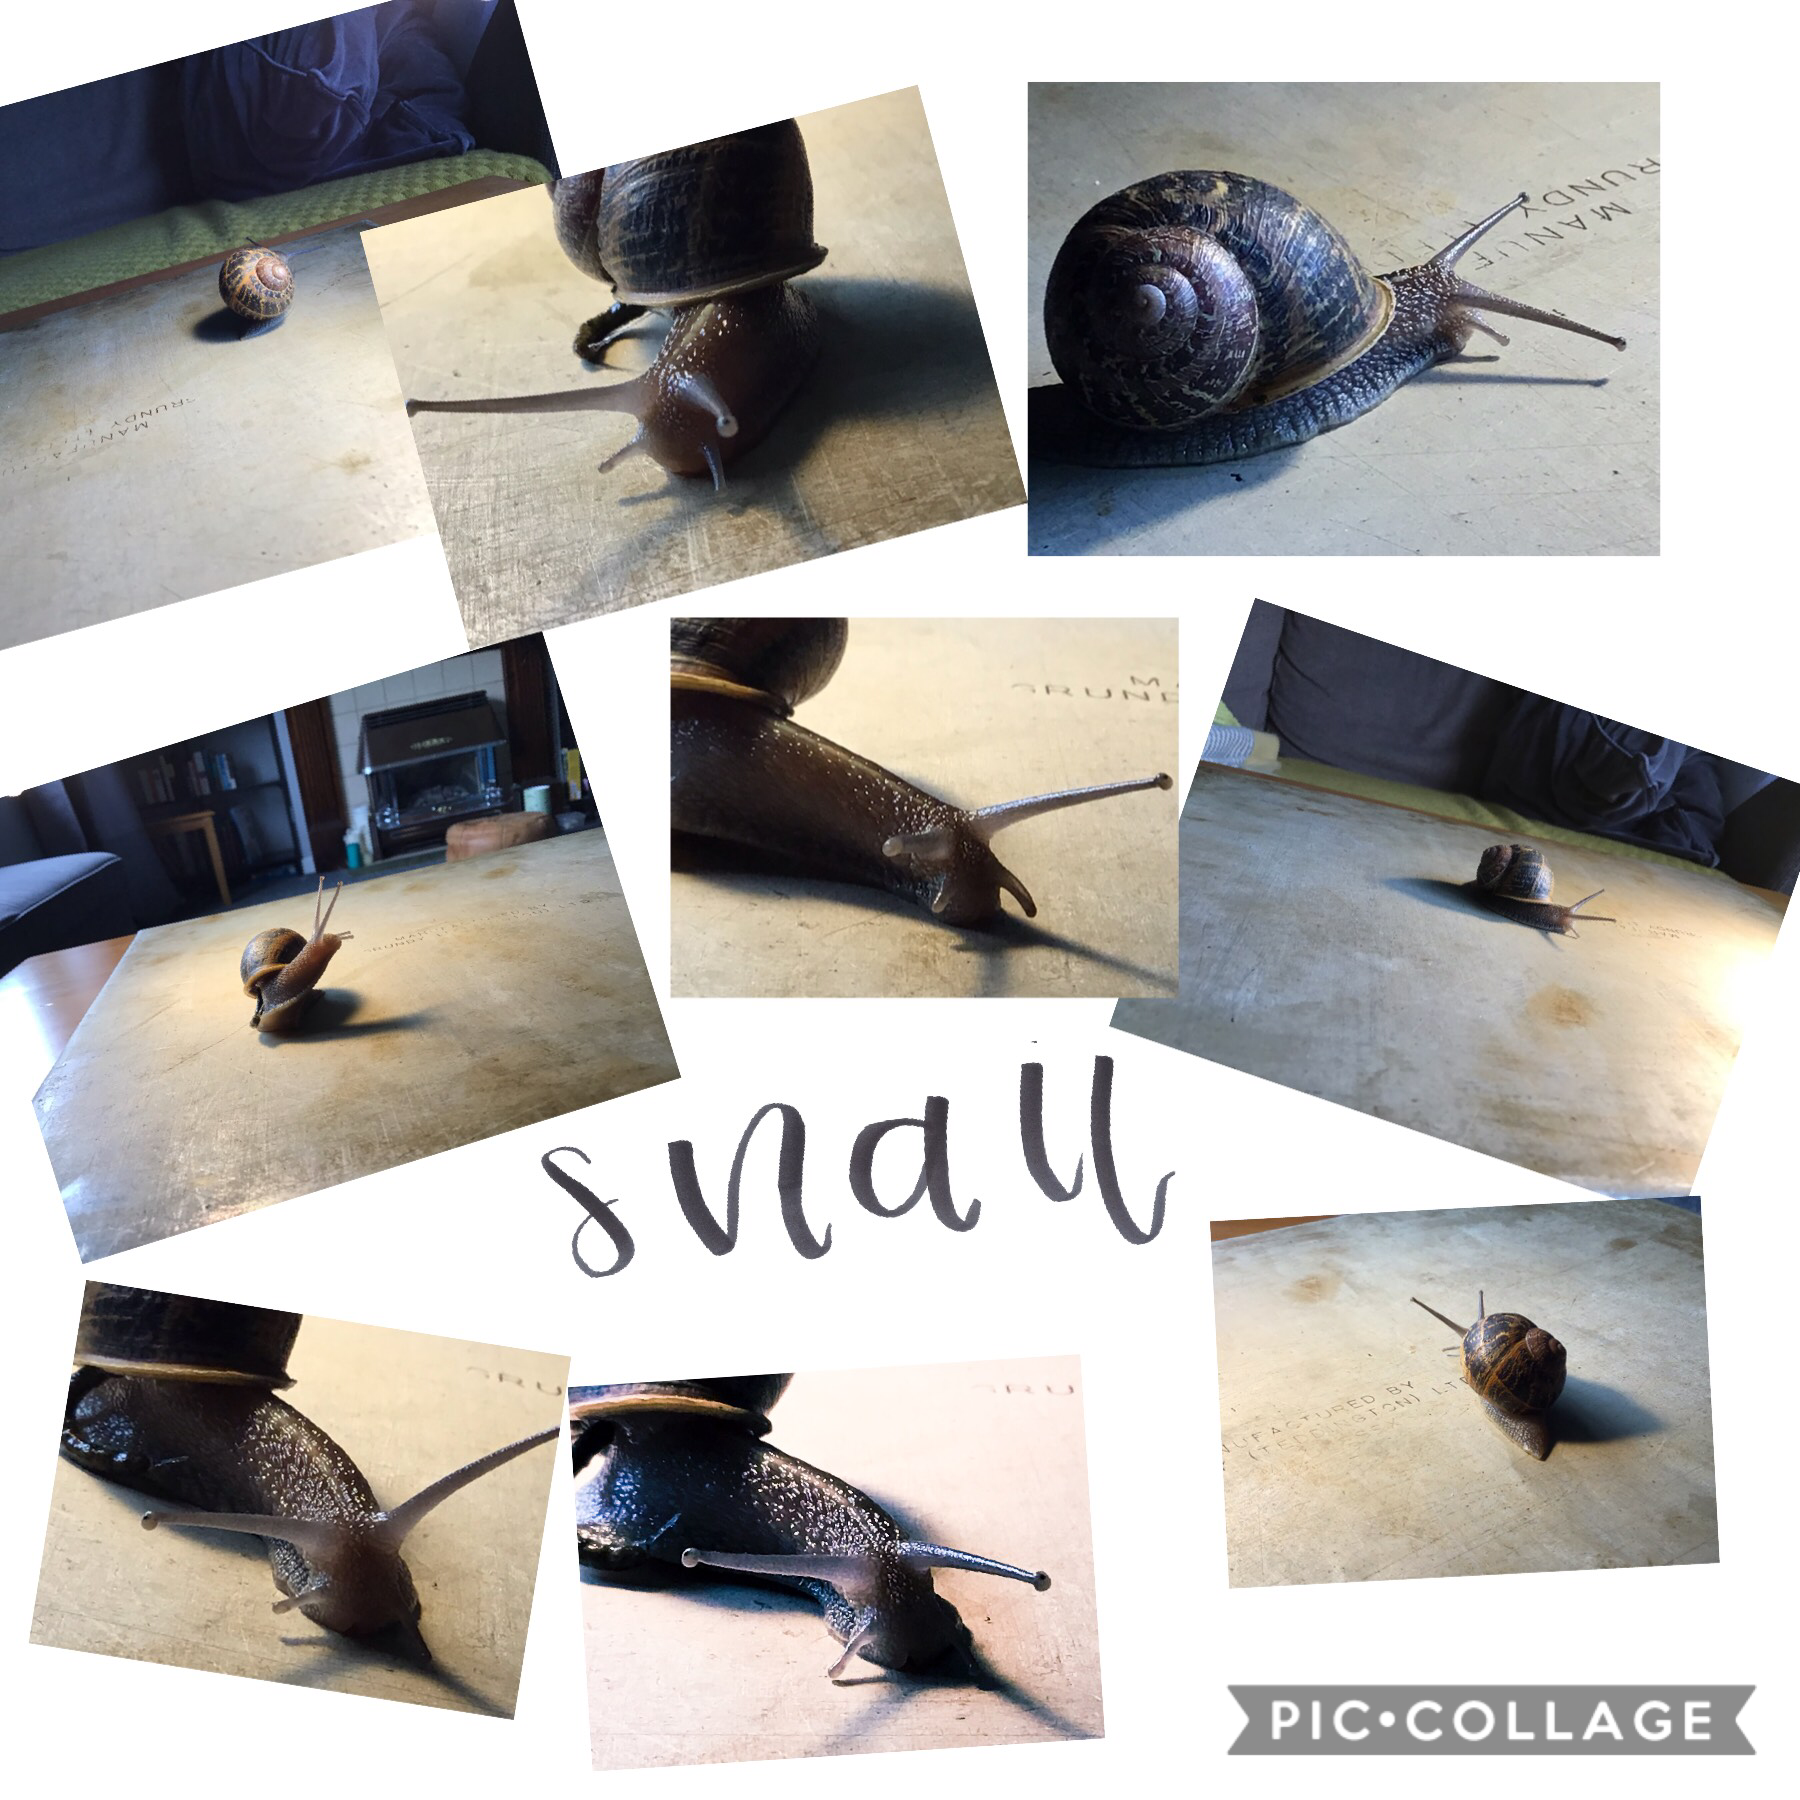 My snails!